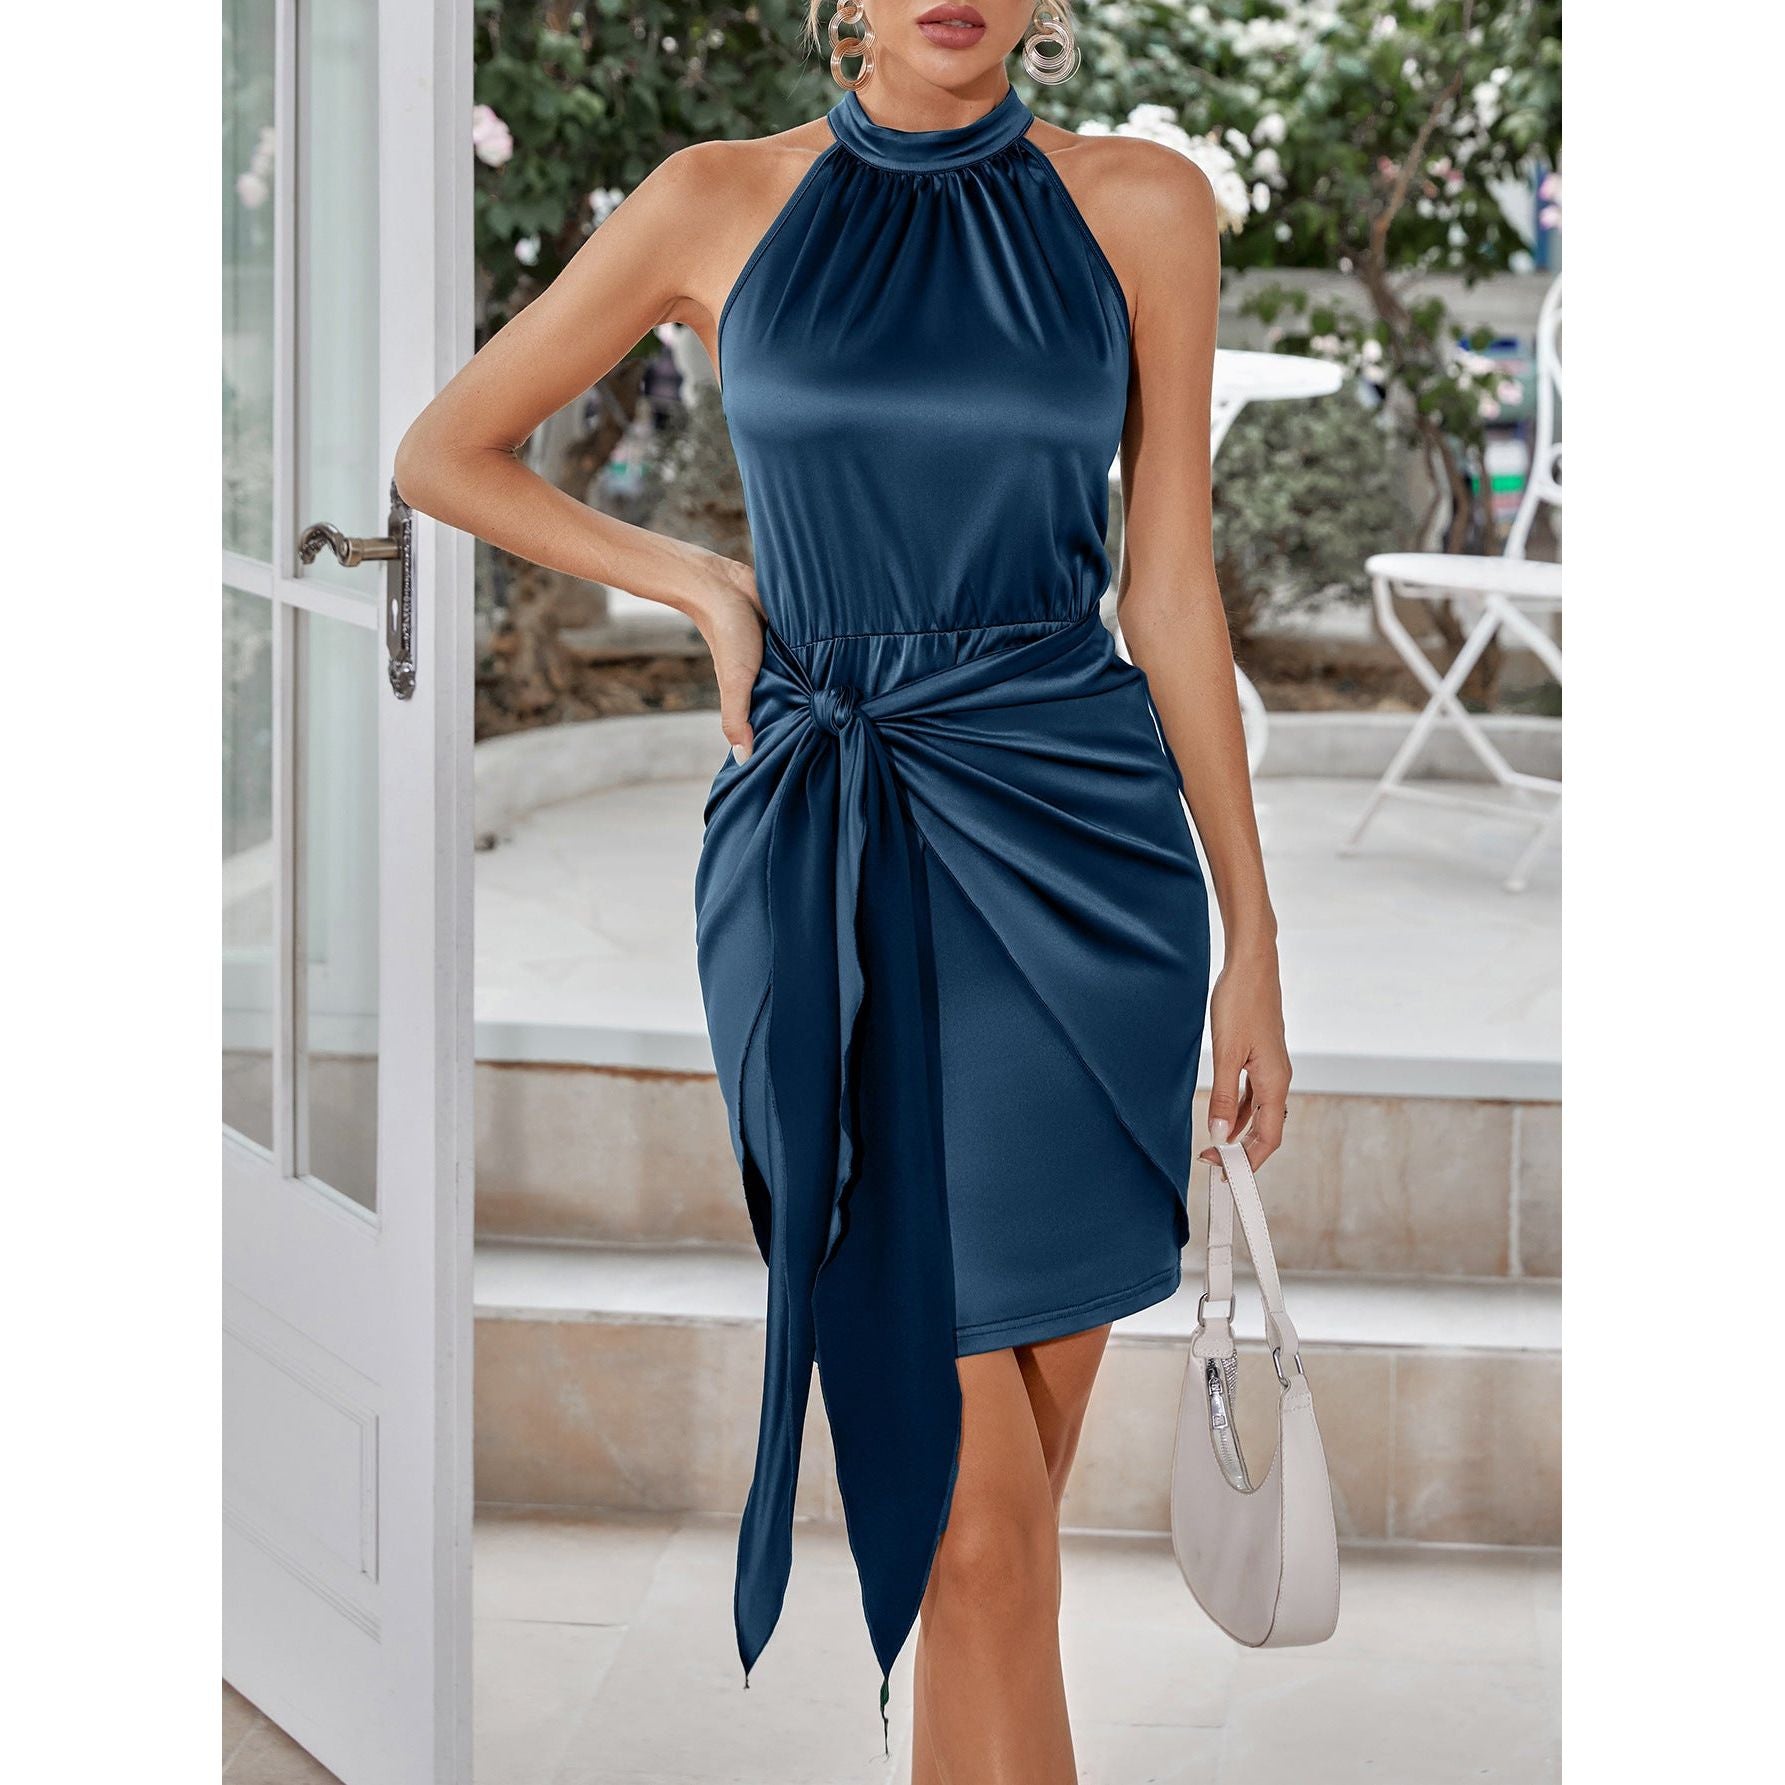 Grecian Neck Tie Front Dress - TiffanyzKlozet